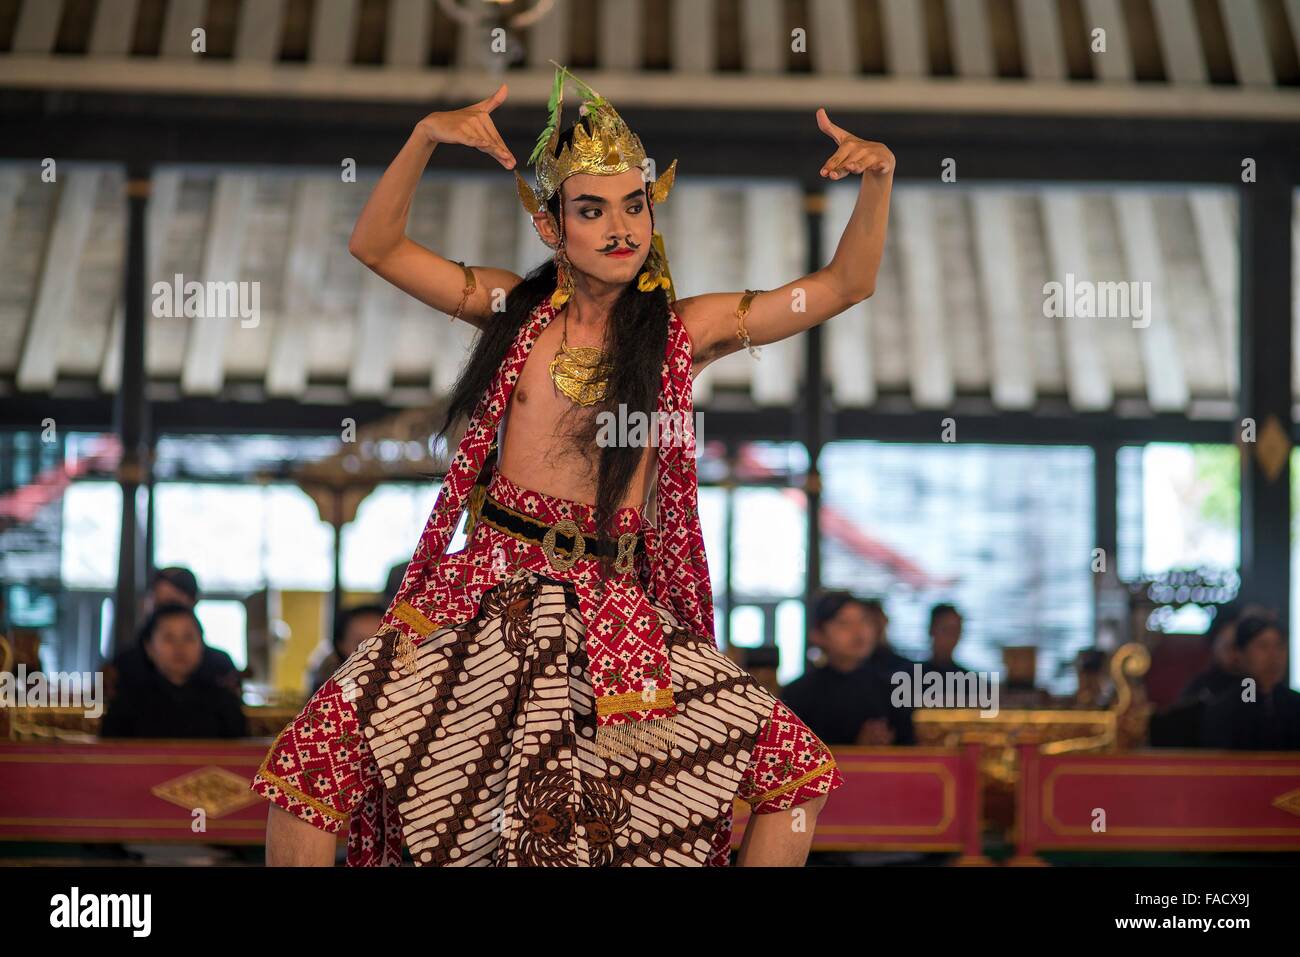 Durchführung einer traditionellen javanischen Tänzer tanzen im The Sultan Palace / Kraton, Yogyakarta, Java, Indonesien, Asien Stockfoto